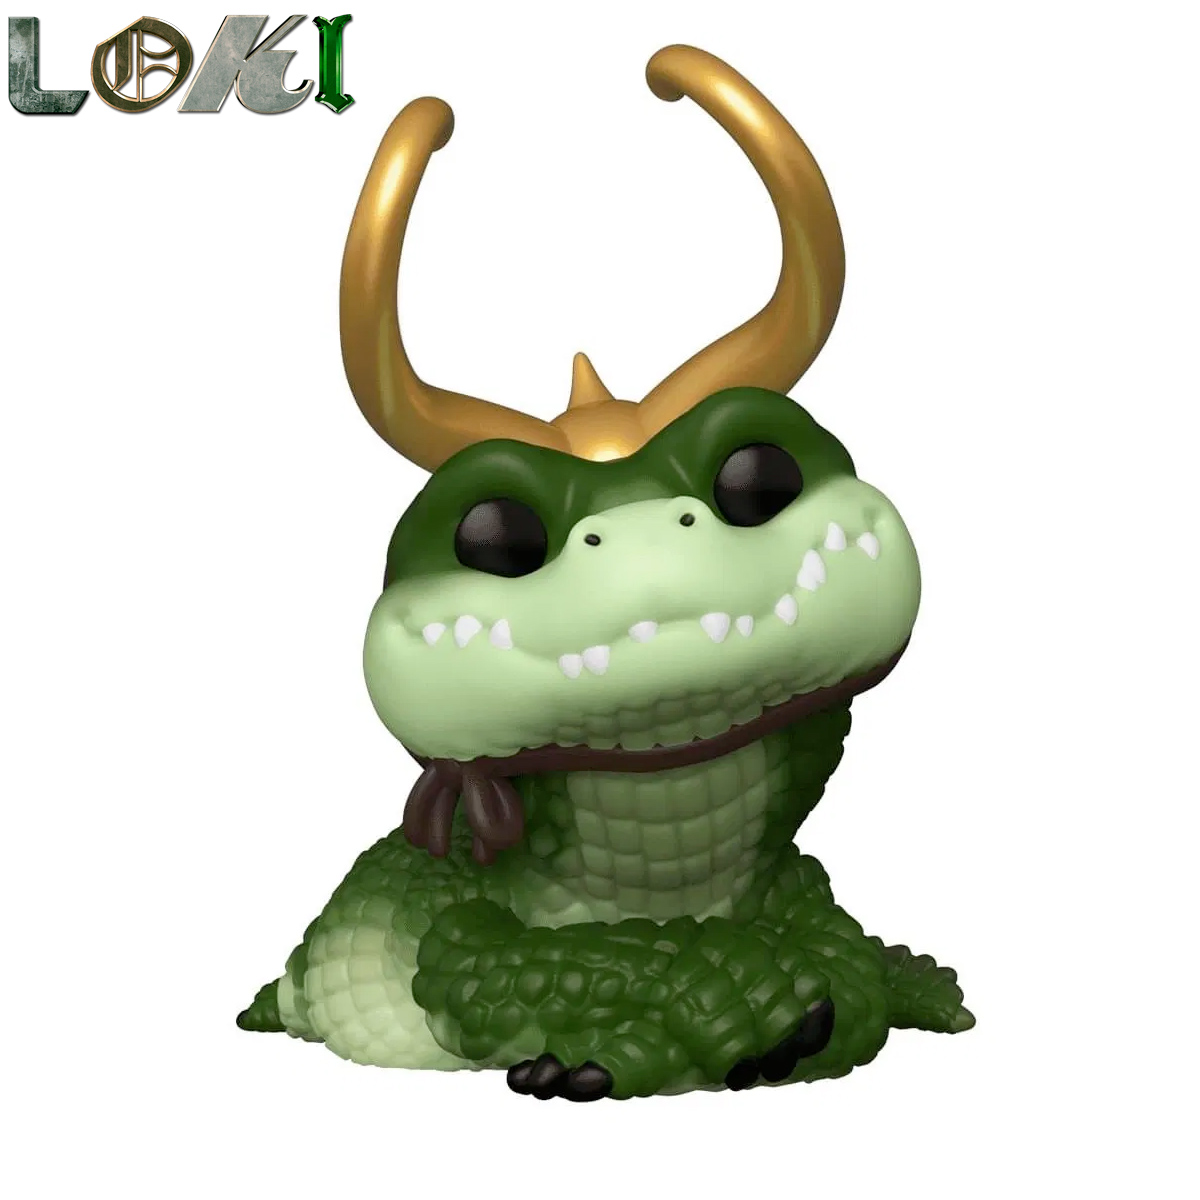 Bonecos Pop! da Série Loki: Alligator Loki, Kid Loki, Classic Loki, President Loki e Ravonna Renslayer